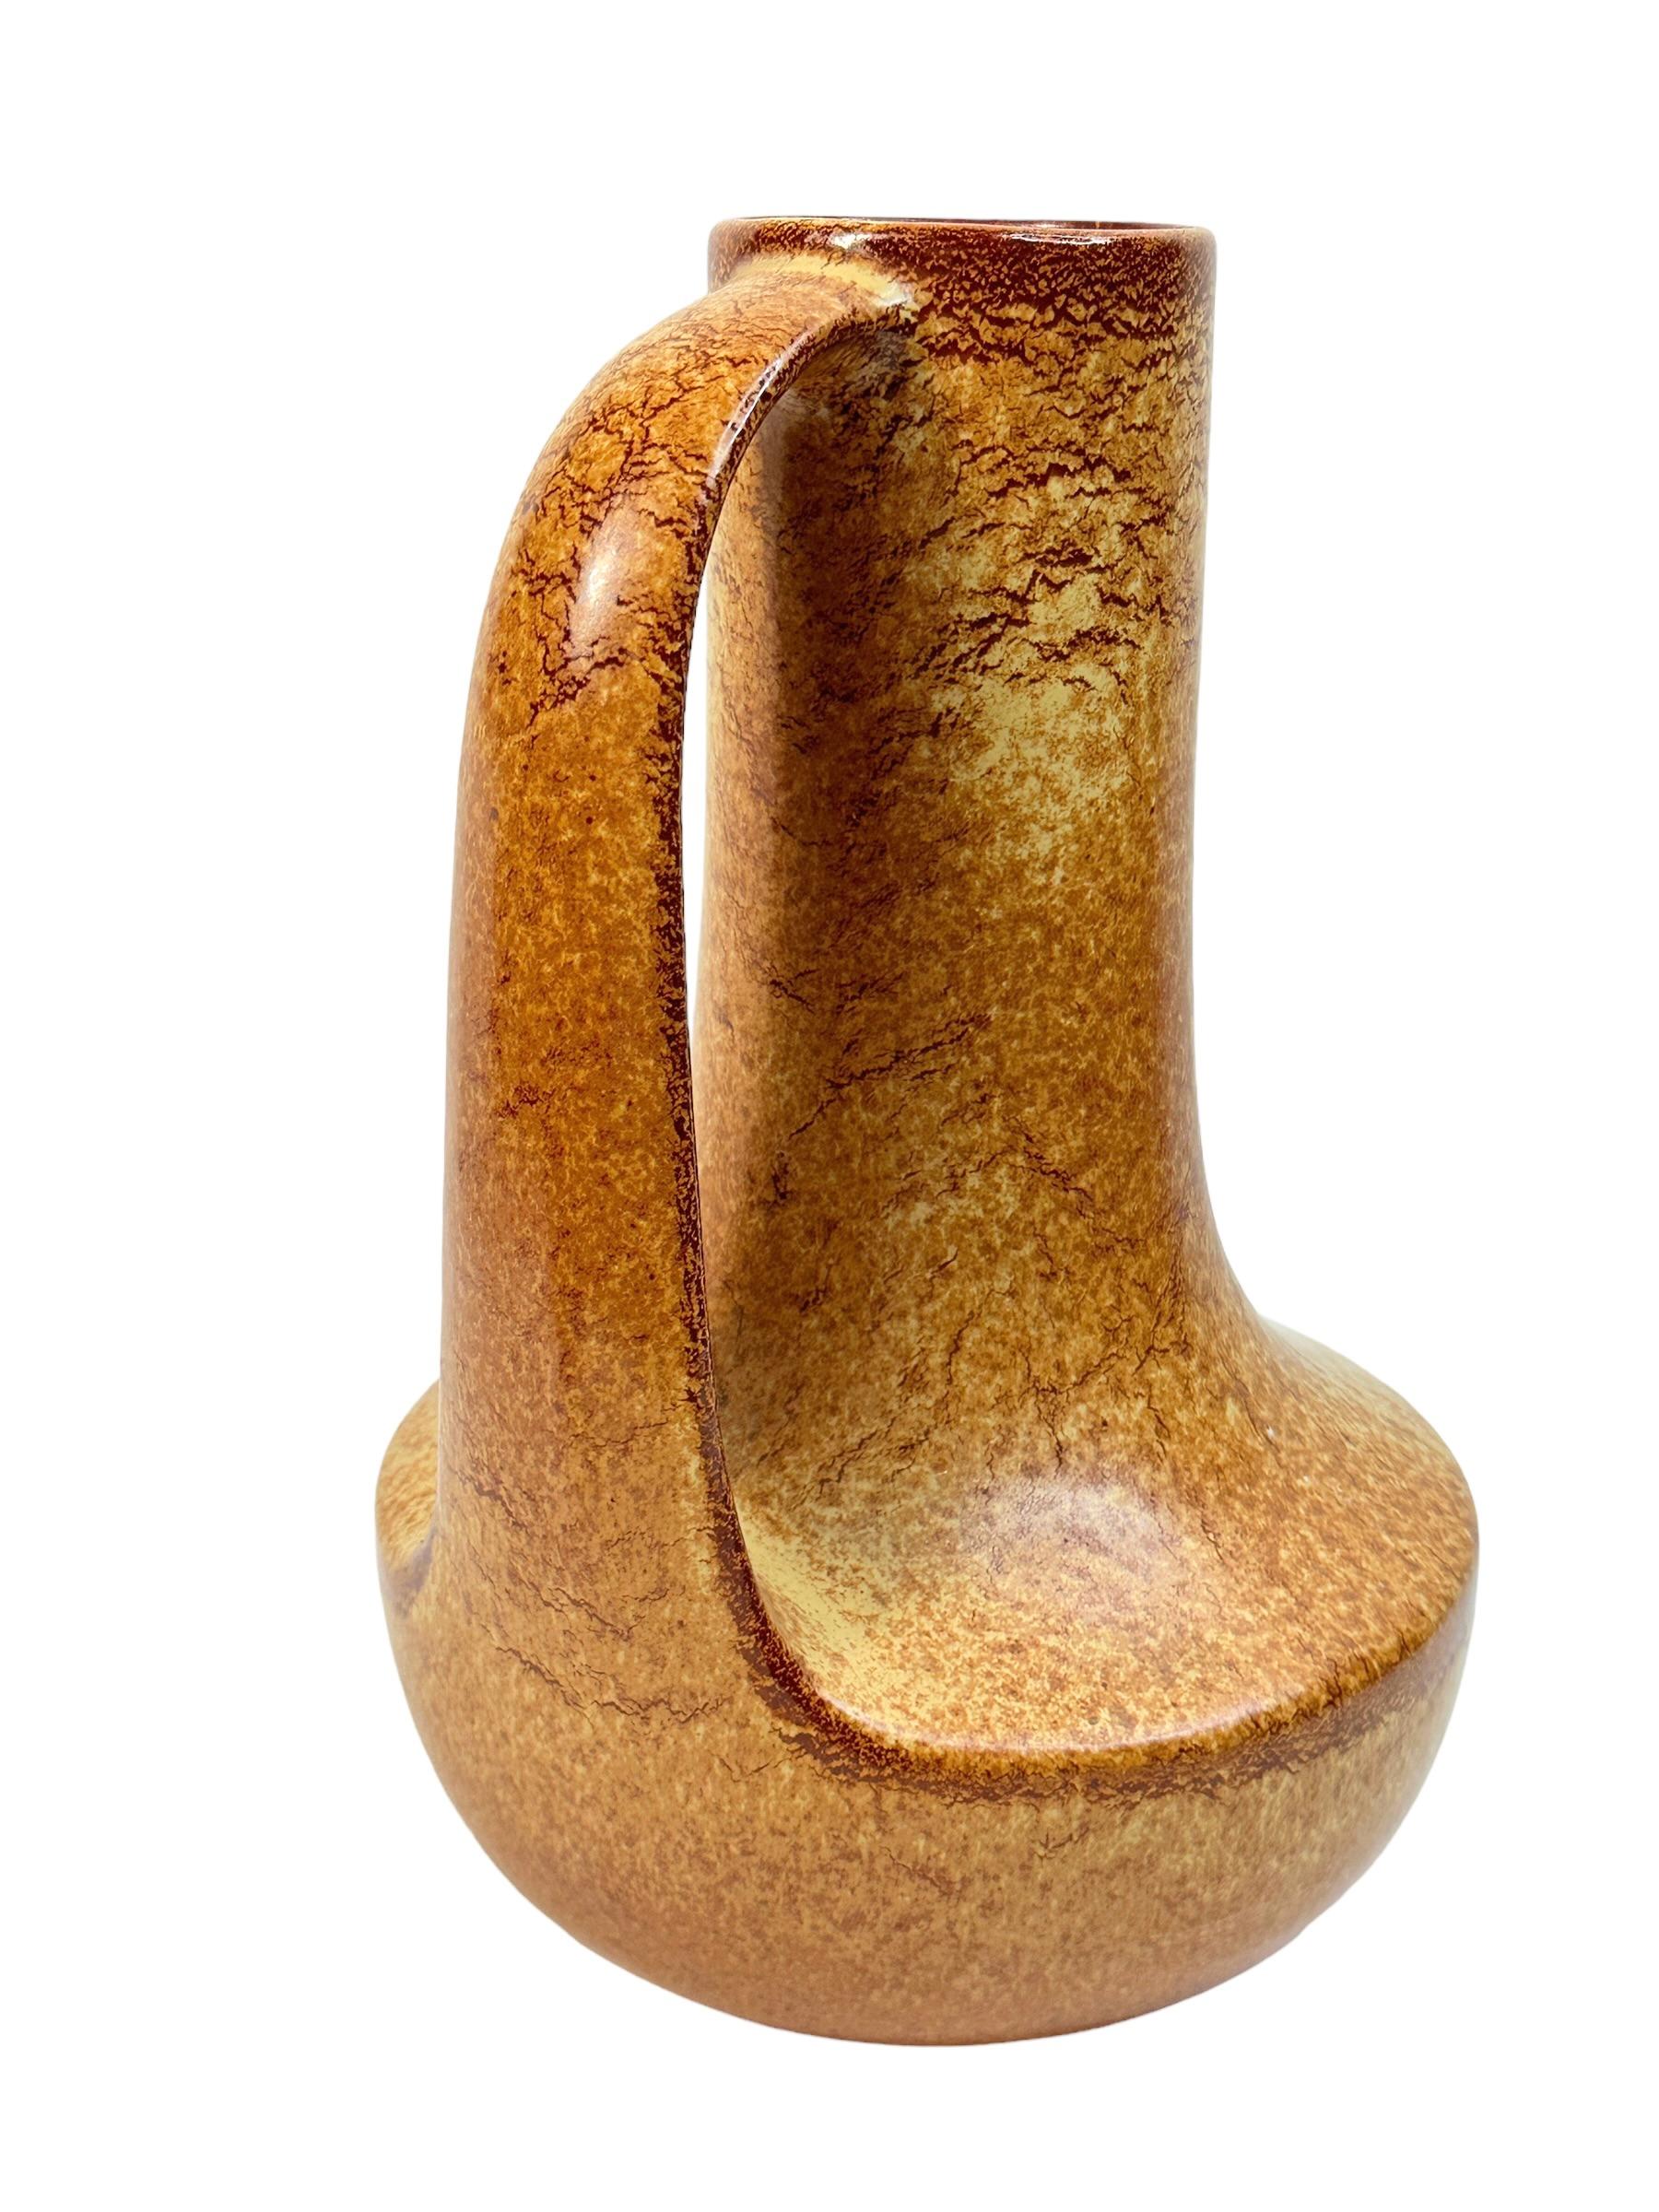 Un étonnant vase en céramique de style moderne du milieu du siècle, fabriqué en Italie, vers les années 1960. Il s'agit d'un magnifique vase en céramique. Le vase est en très bon état, sans éclats, fissures ou piqûres de puces. Jolie couleur et